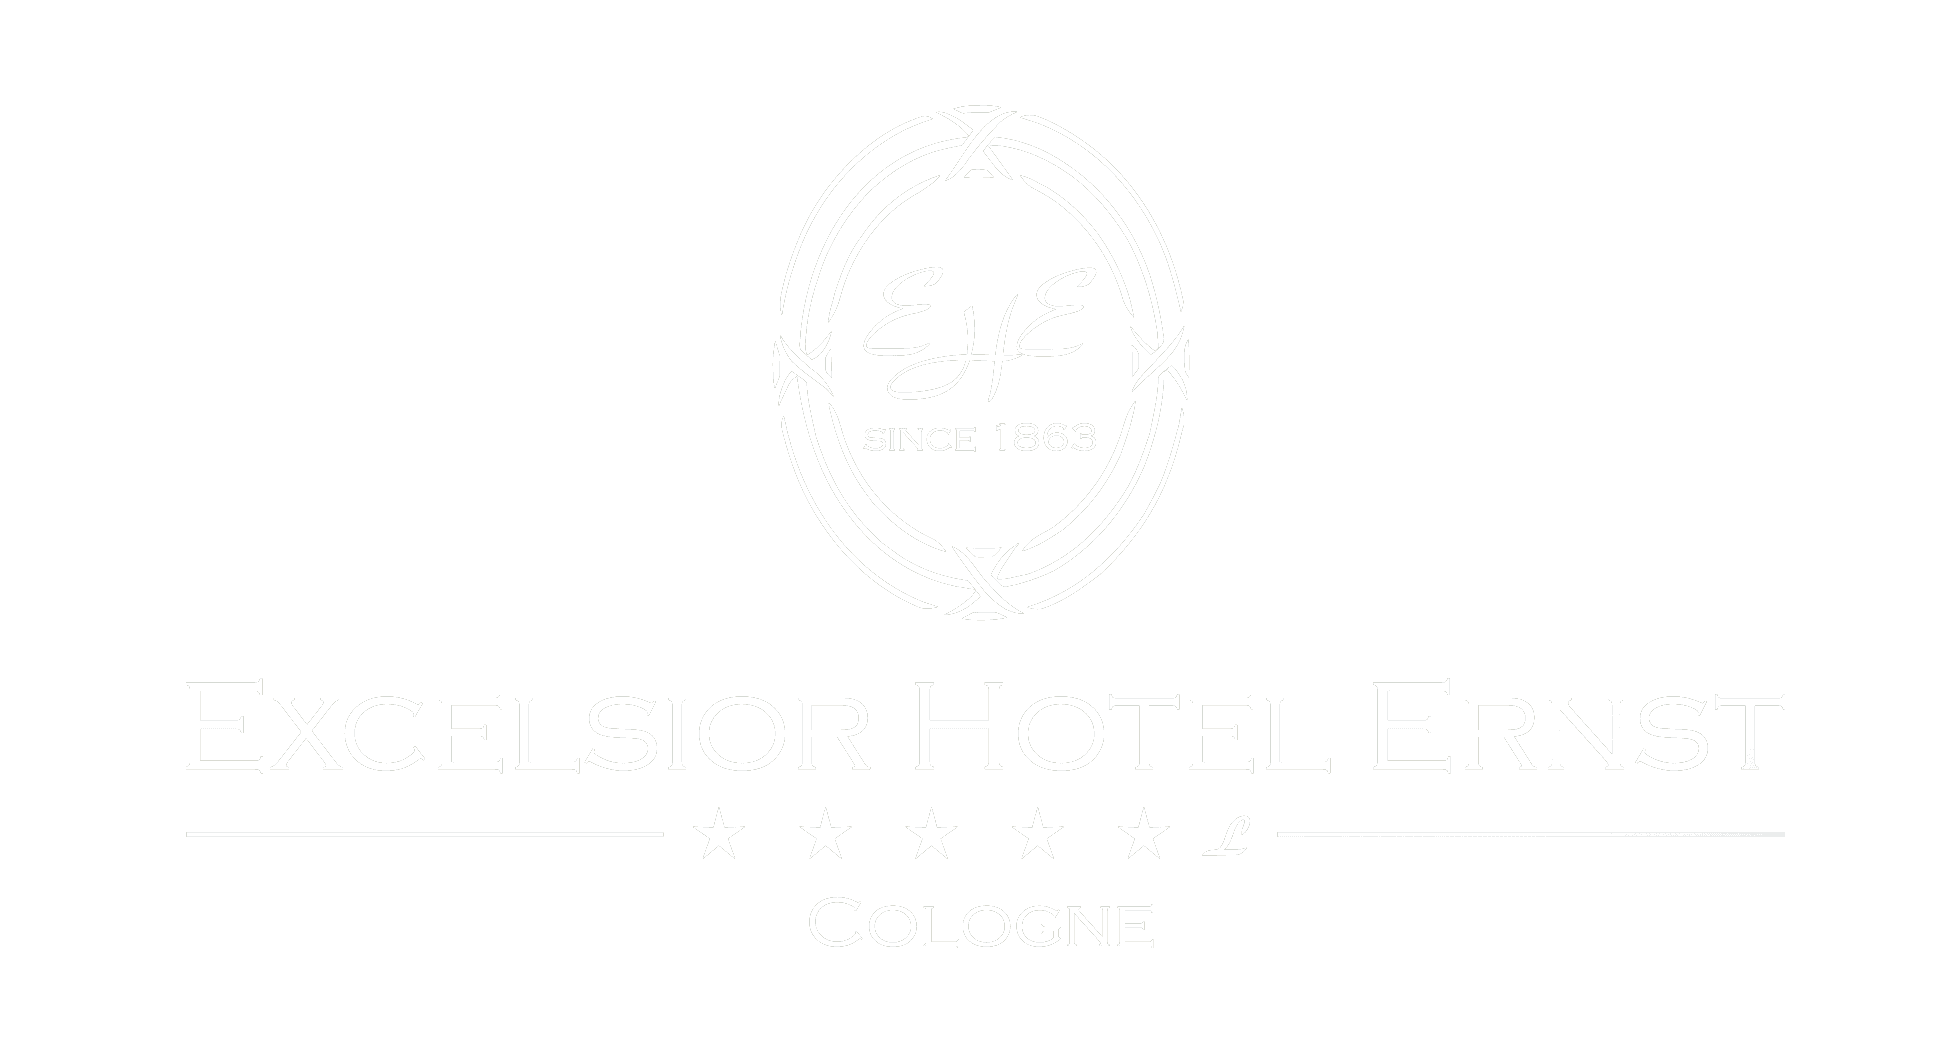 Logo Excelsior Hotel Ernst white on grey background